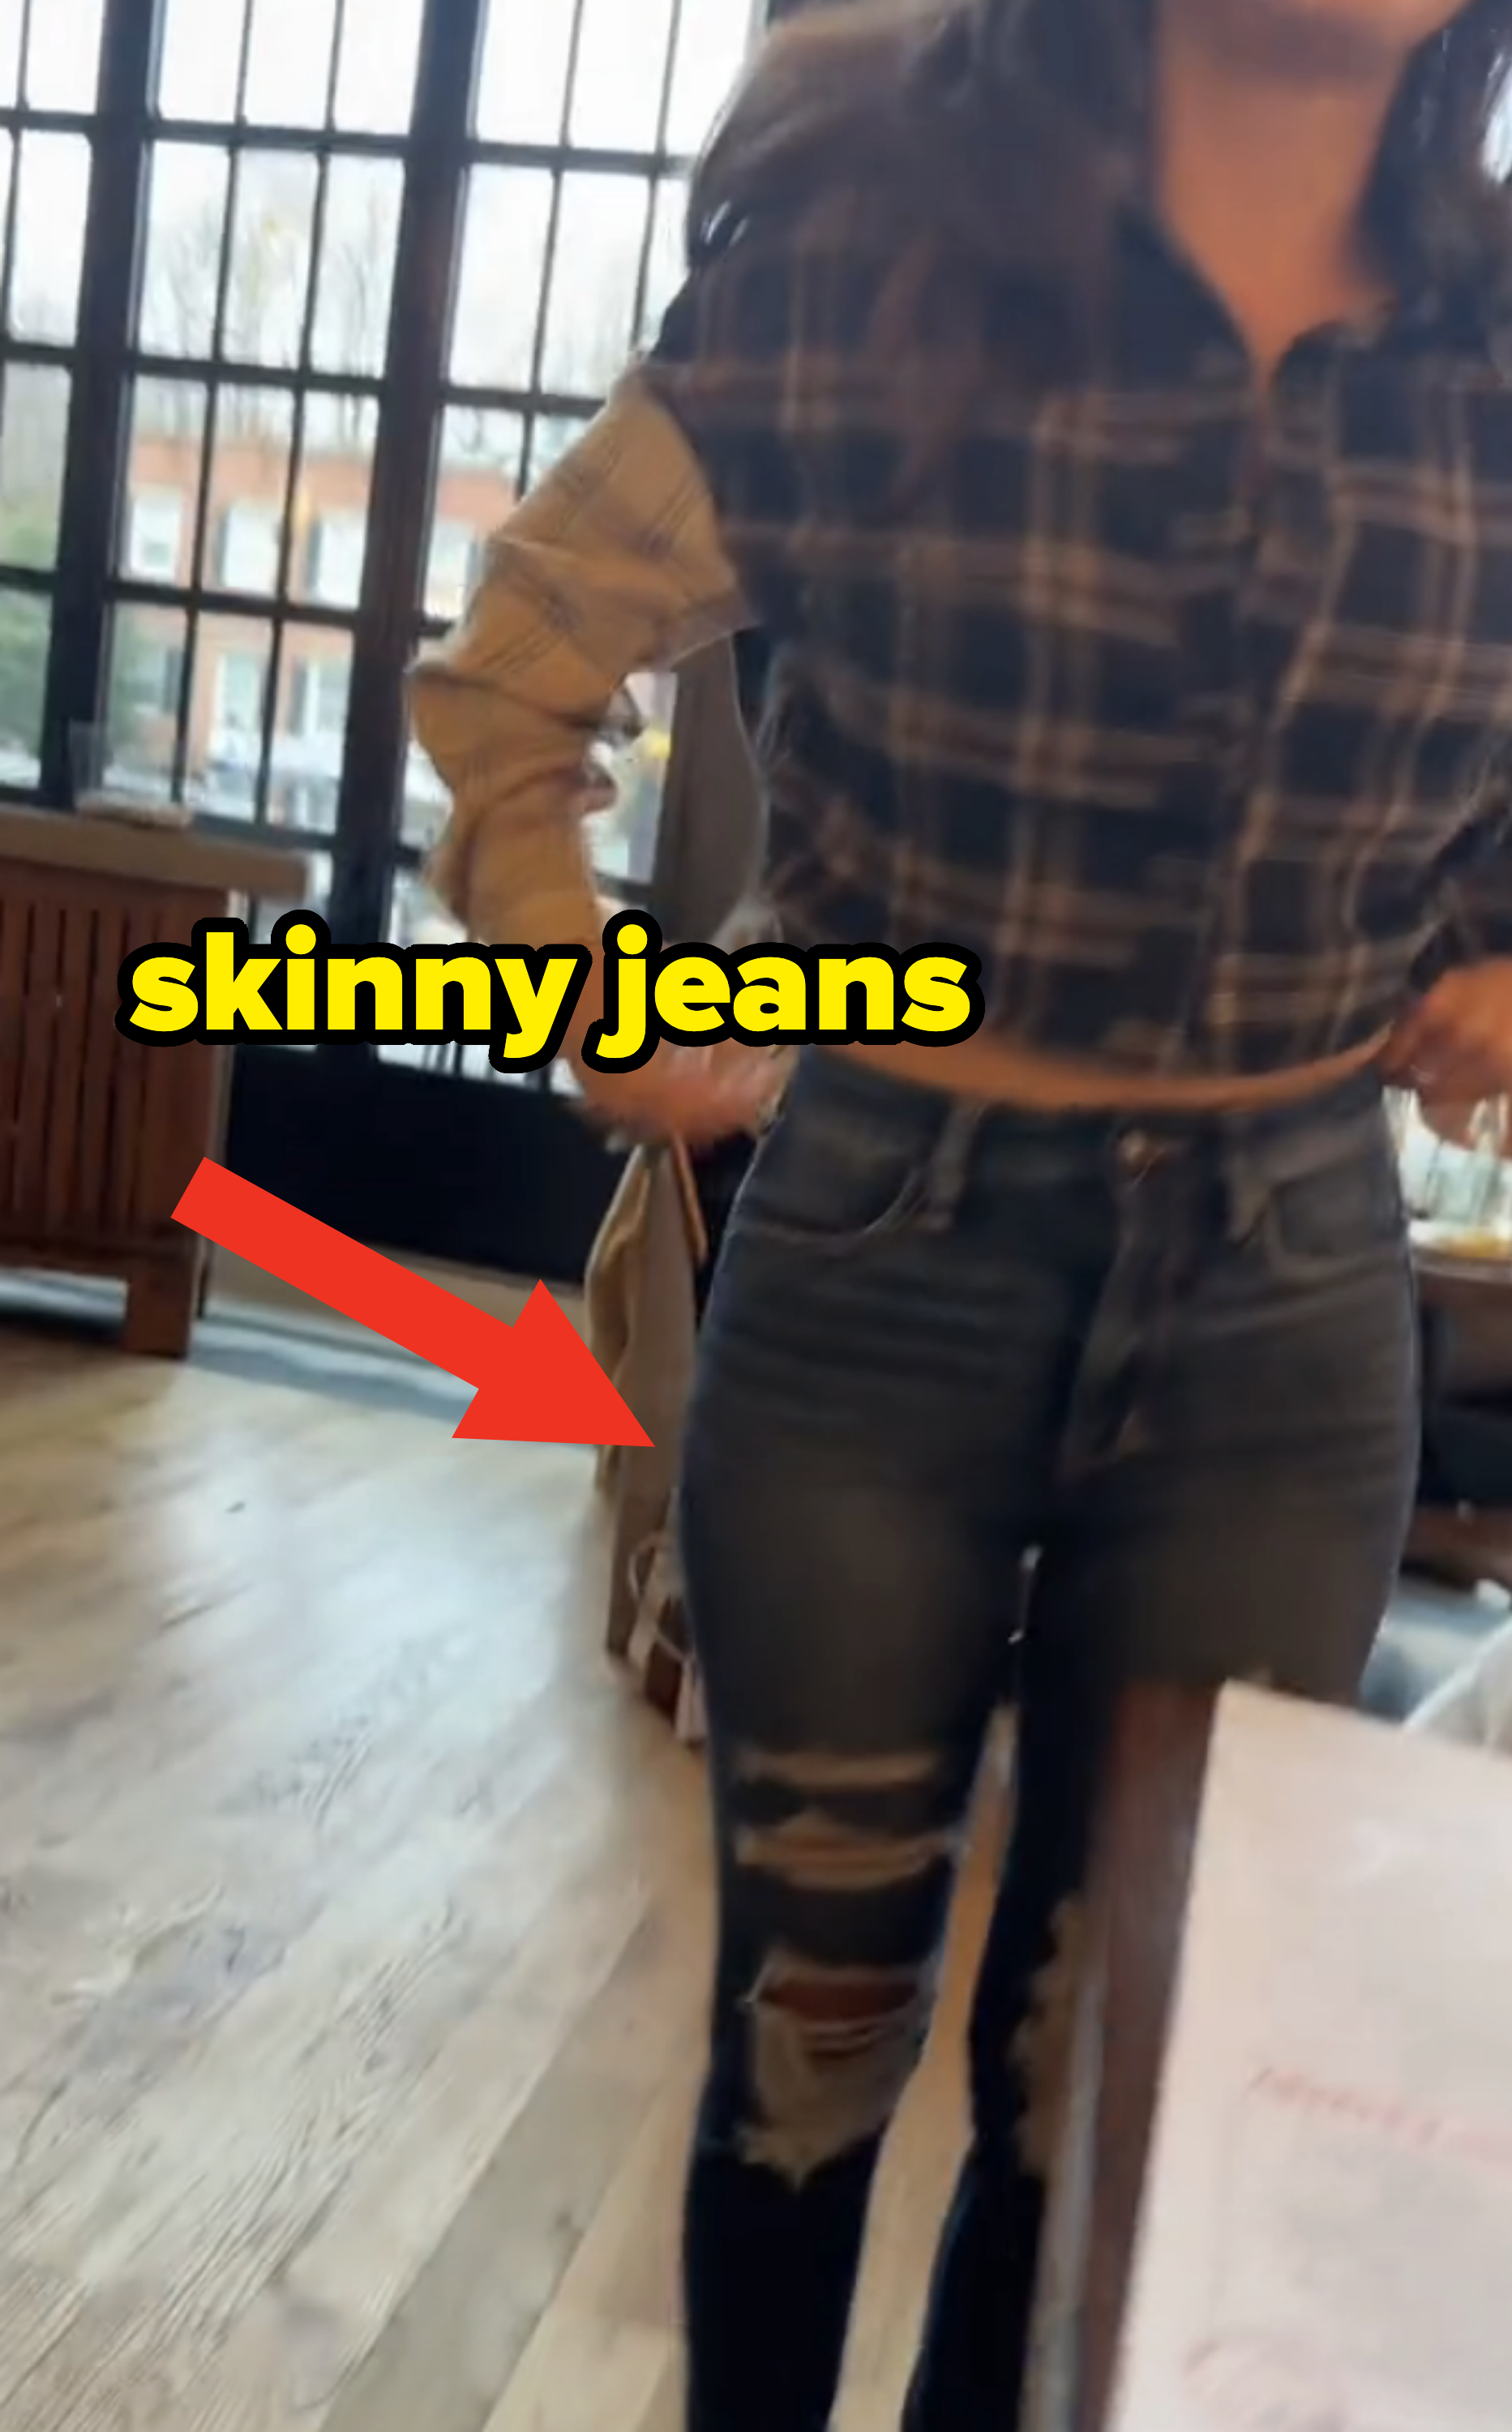 wearing skinny jeans